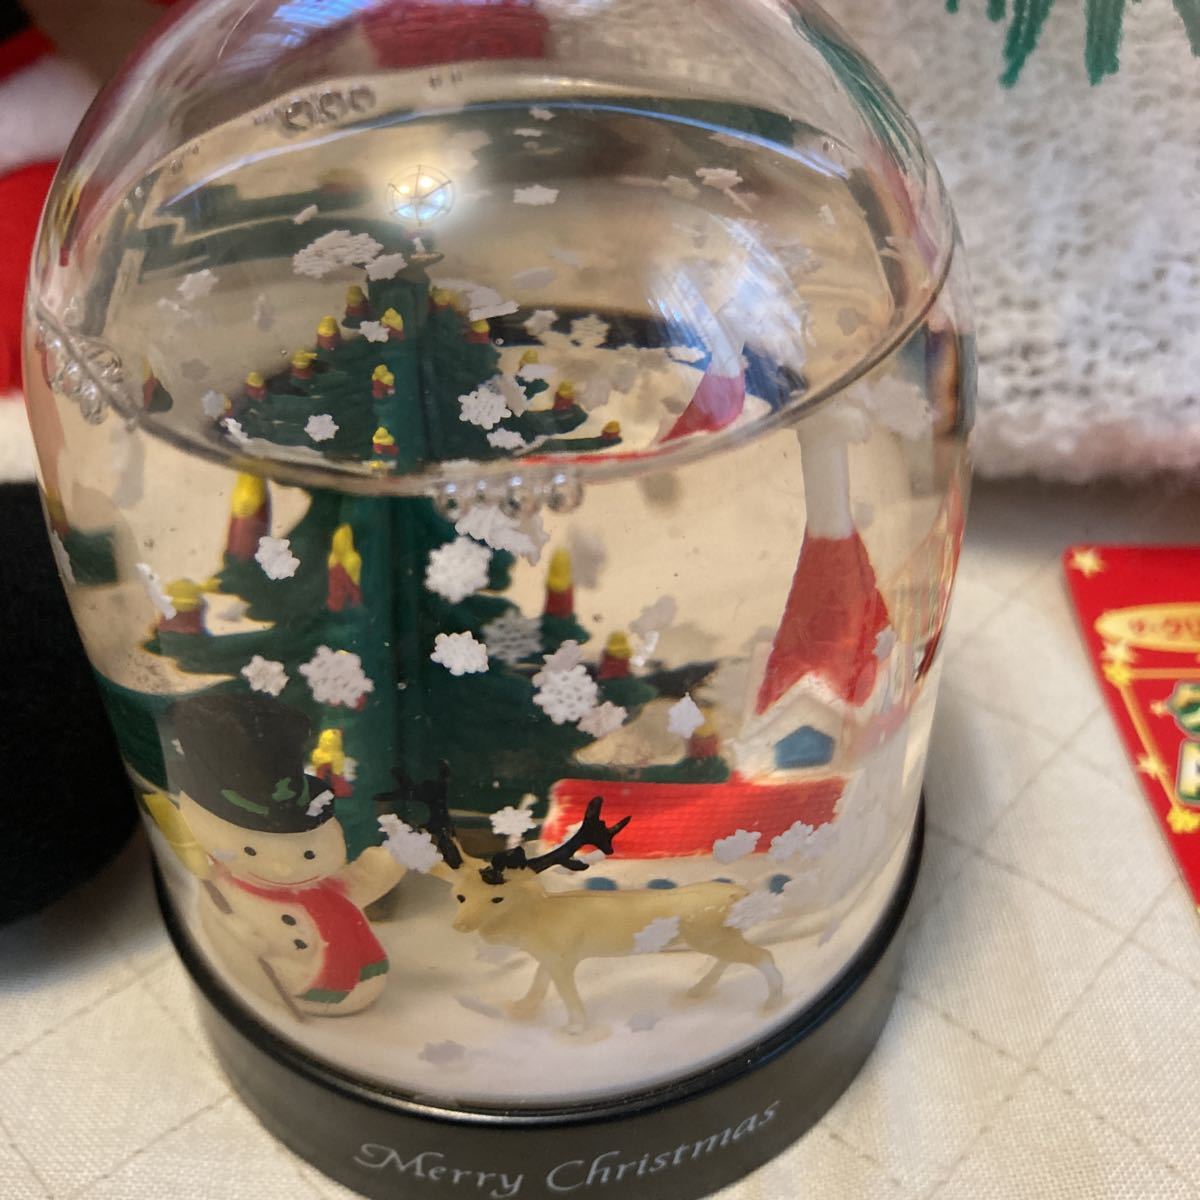  Рождество "снежный шар" дополнение Daiso мягкая игрушка 2 пункт Santa Claus снеговик кукла северный олень tree ... снег . Mai . retro 